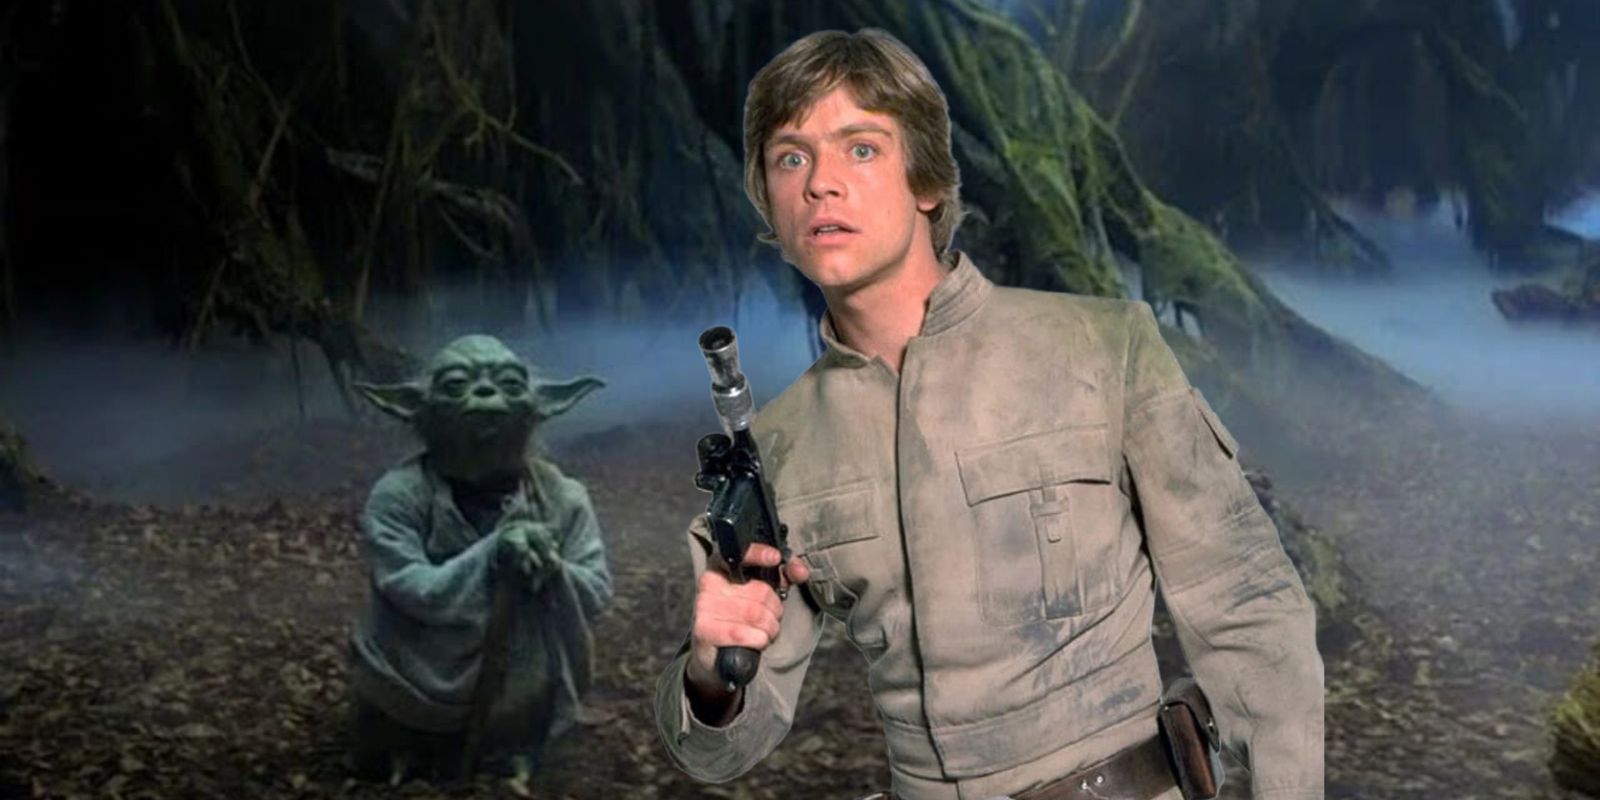 Luke Skywalker on Dagobah with Yoda